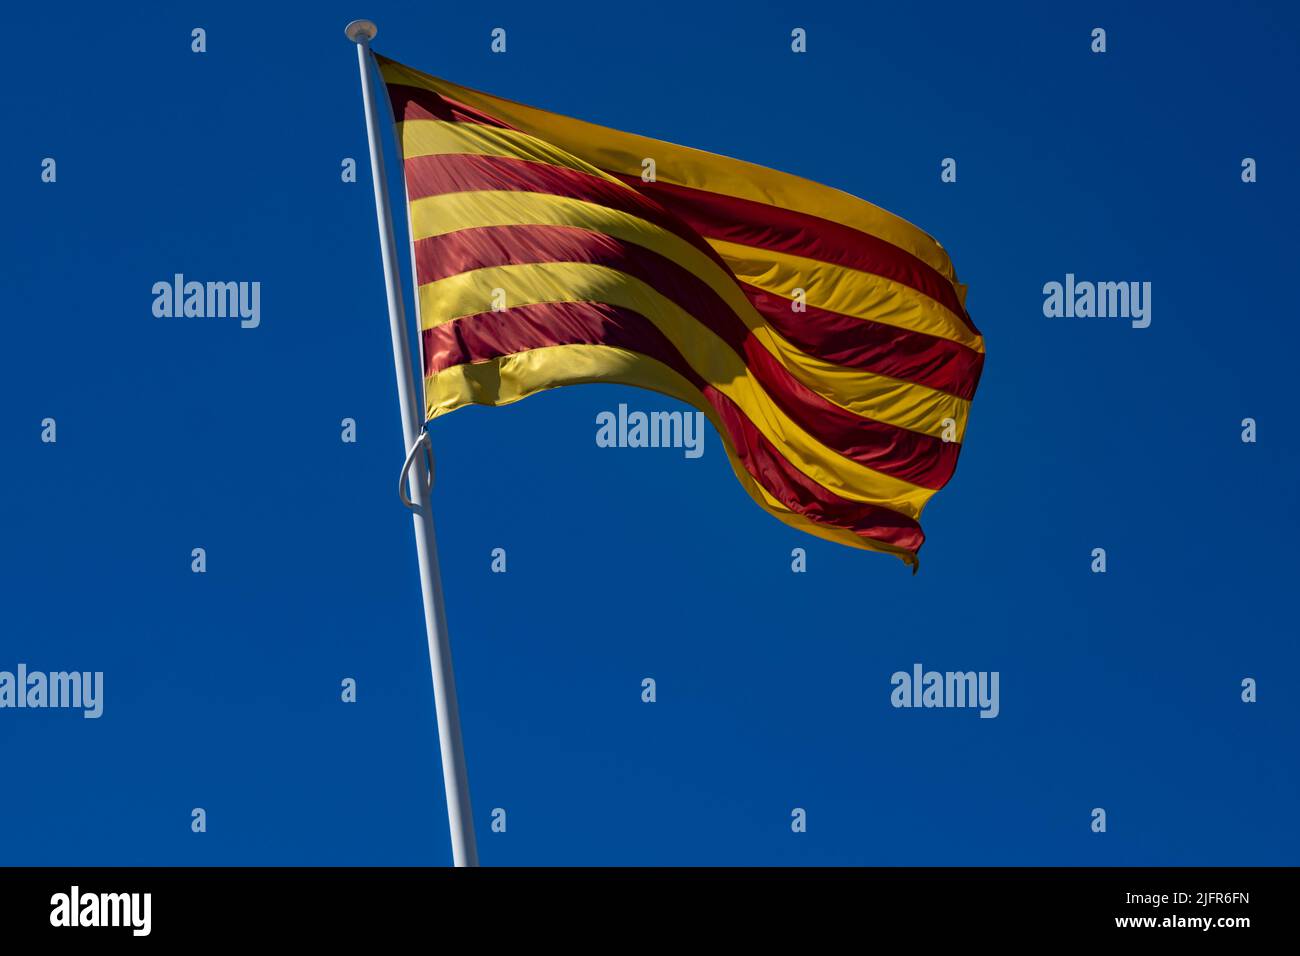 Die Flagge Kataloniens (Autonome Gemeinschaft Spaniens) winkt in einem tiefblauen Himmel. Fahnenstange nach links geneigt. Stockfoto